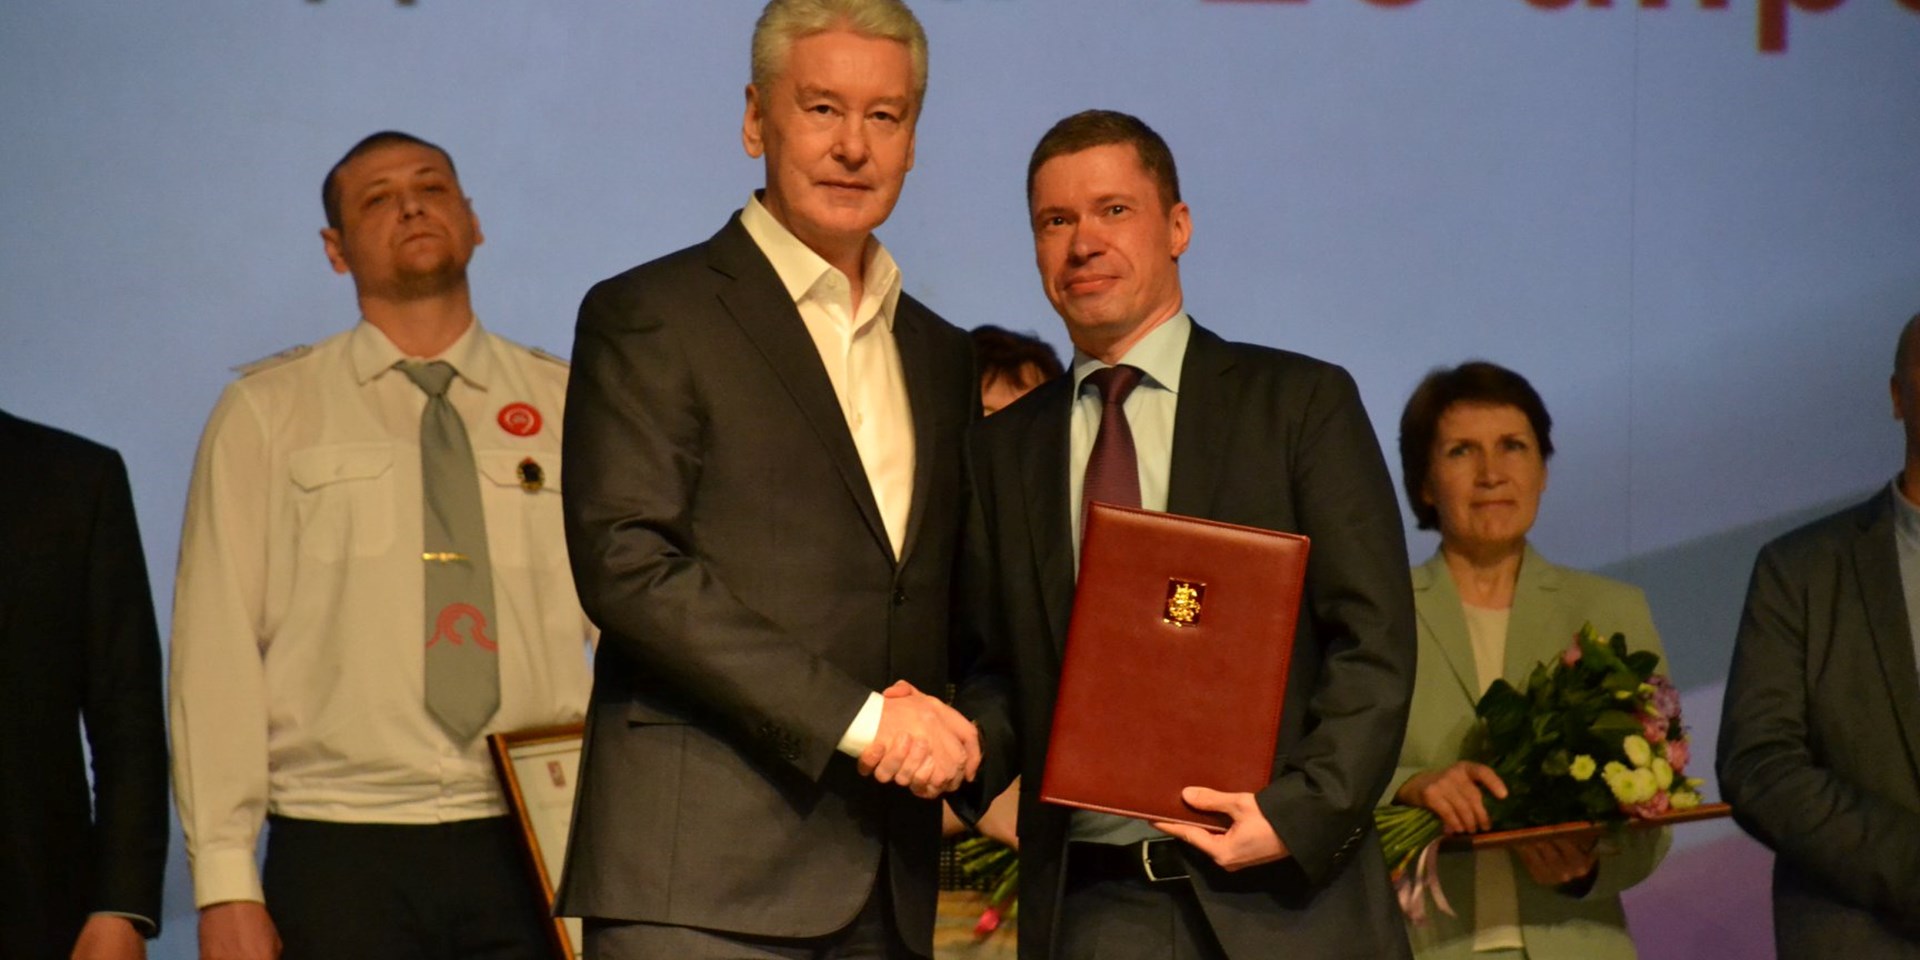 Заслуги члена Московского штаба ОНФ получили высокую оценку мэра столицы